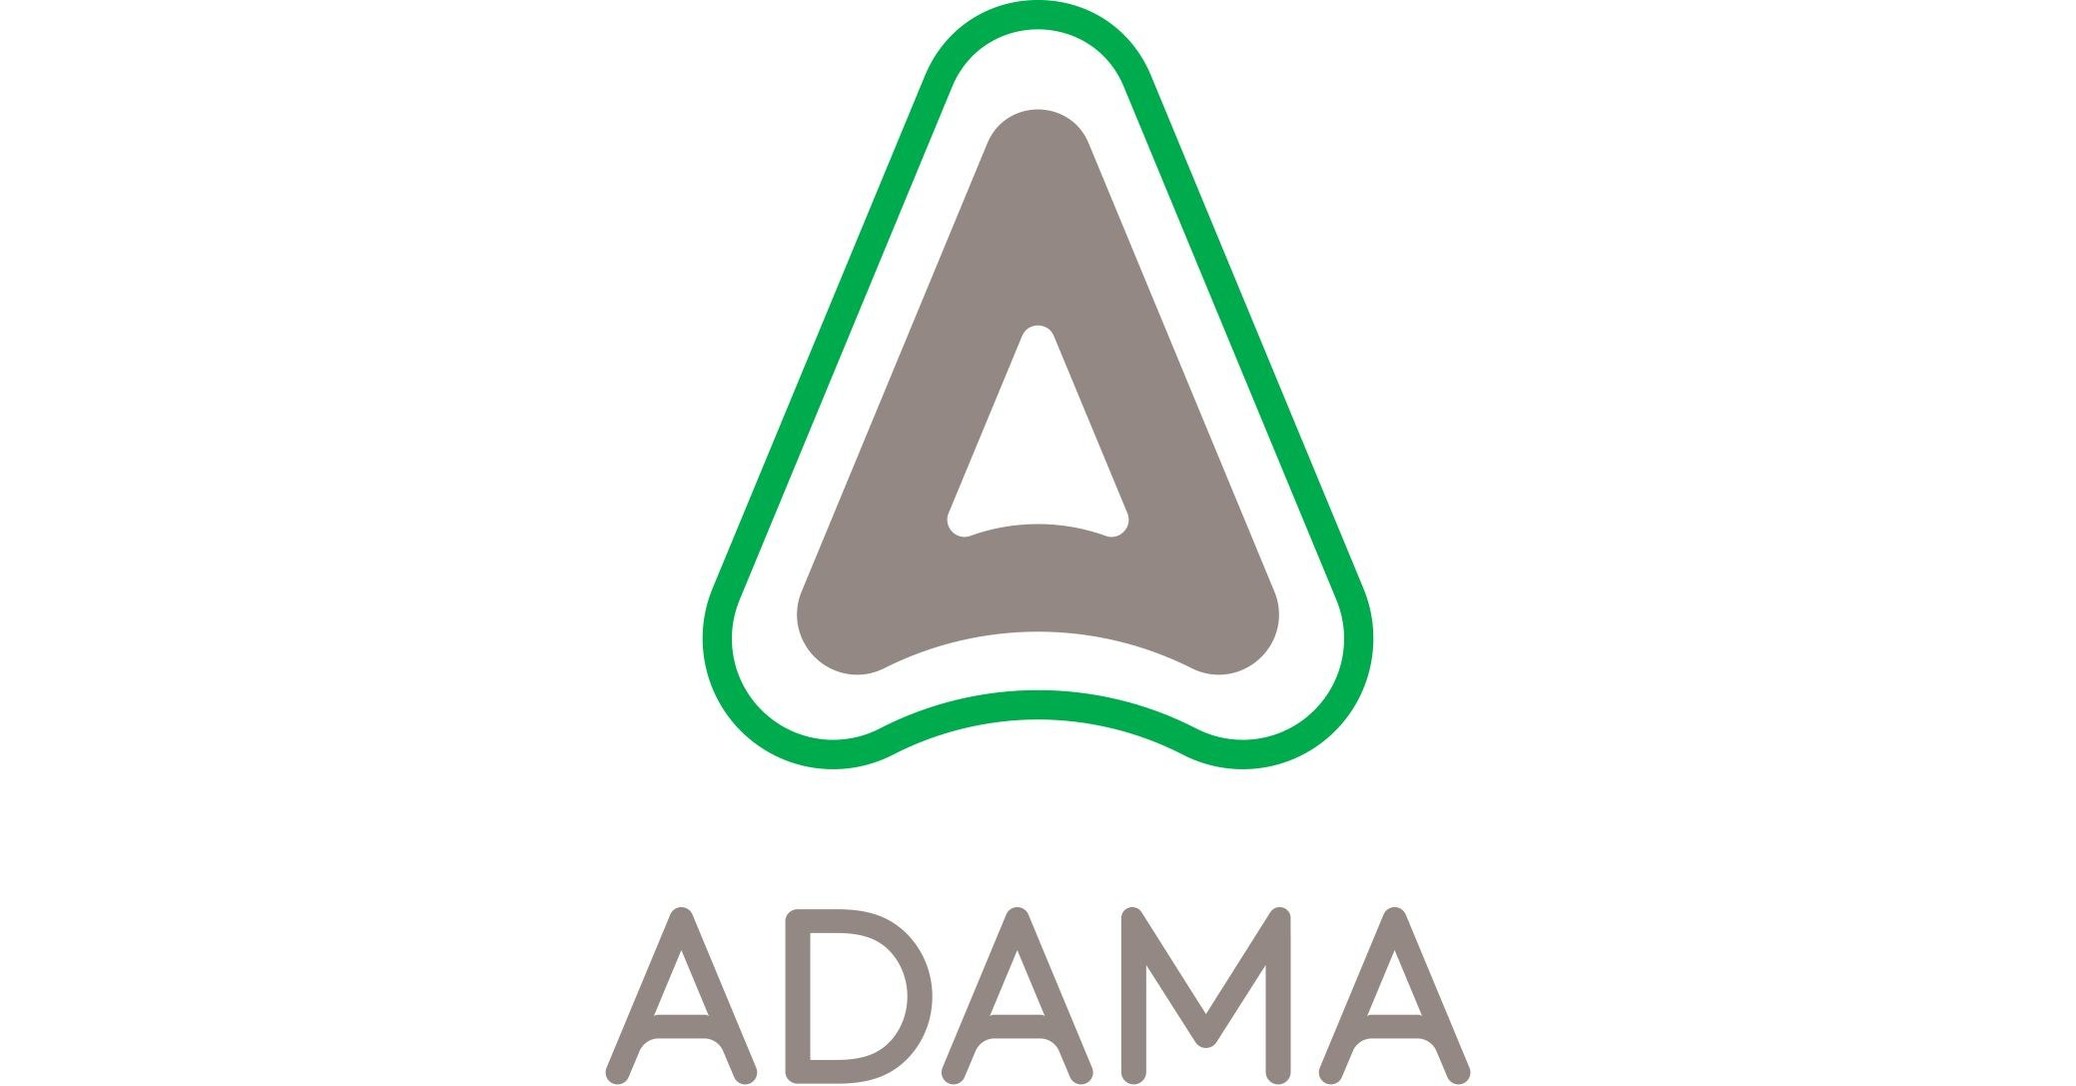 ADAMA amplía disponibilidad de Apresa® en Sudamérica, un herbicida altamente efectivo para soja, maíz y otros cultivos